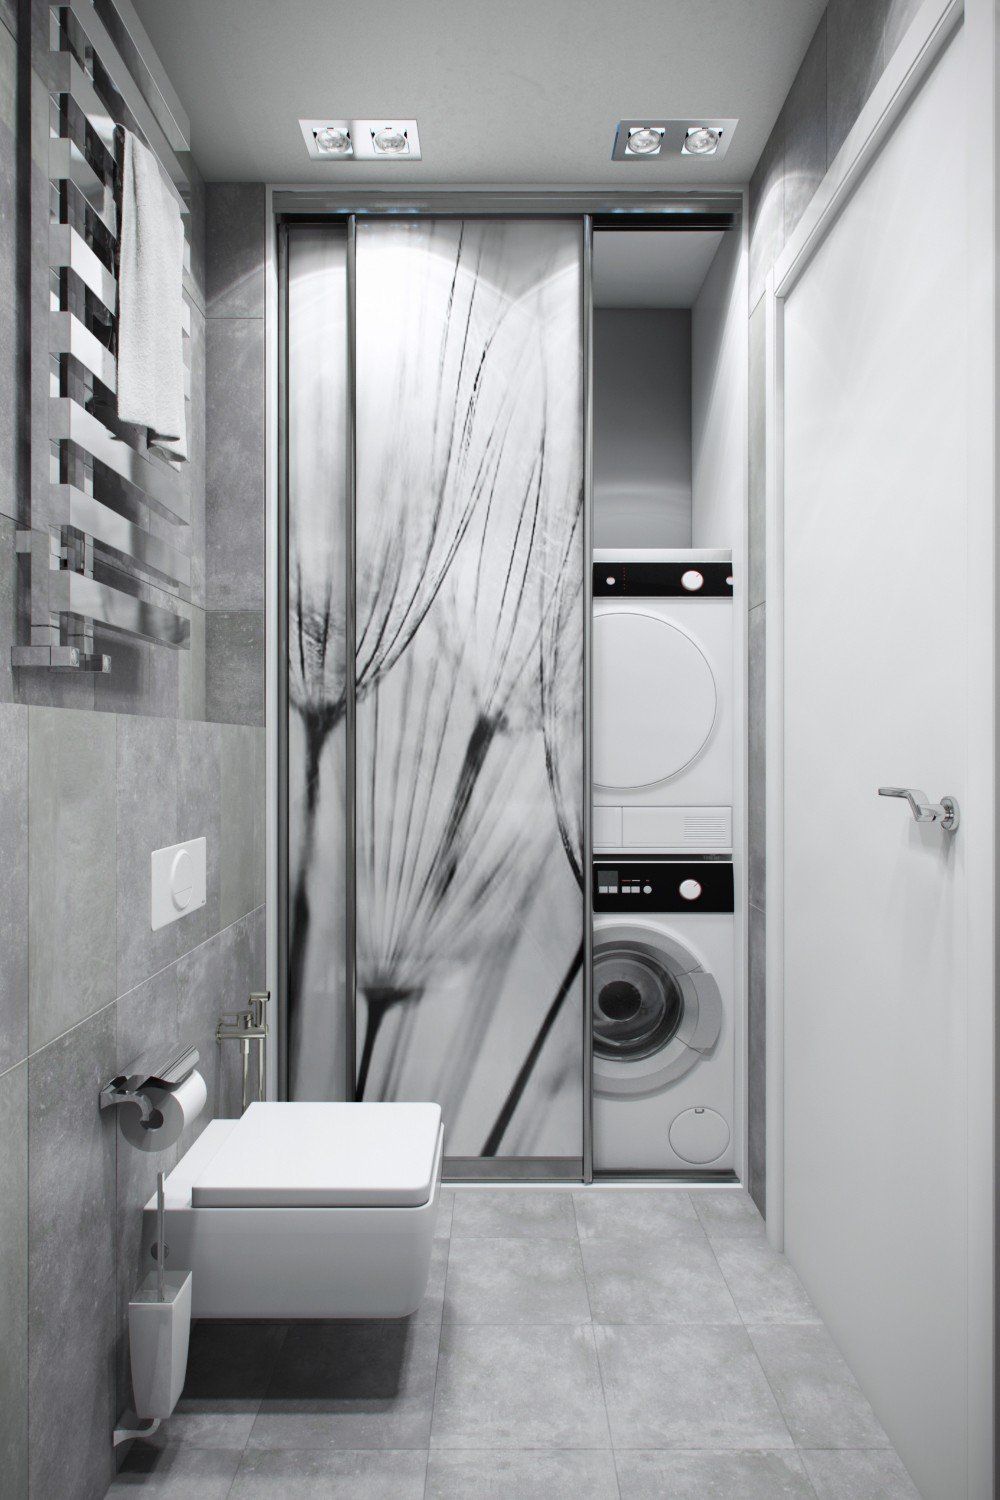 стиральная машина в туалете дизайн интерьера